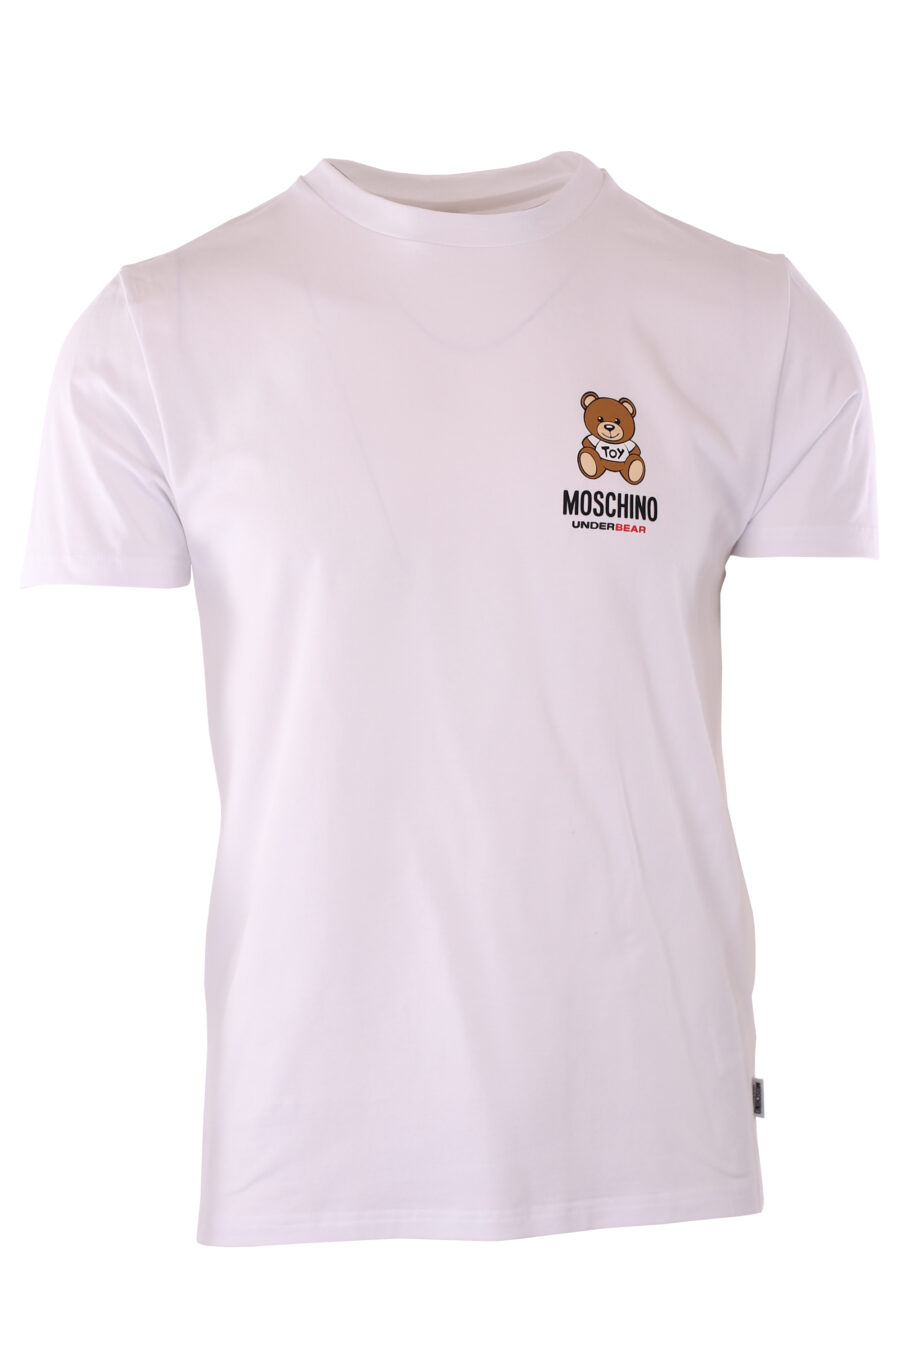 T-shirt blanc "slim fit" avec minilogue d'ours "underbear" - IMG 6609